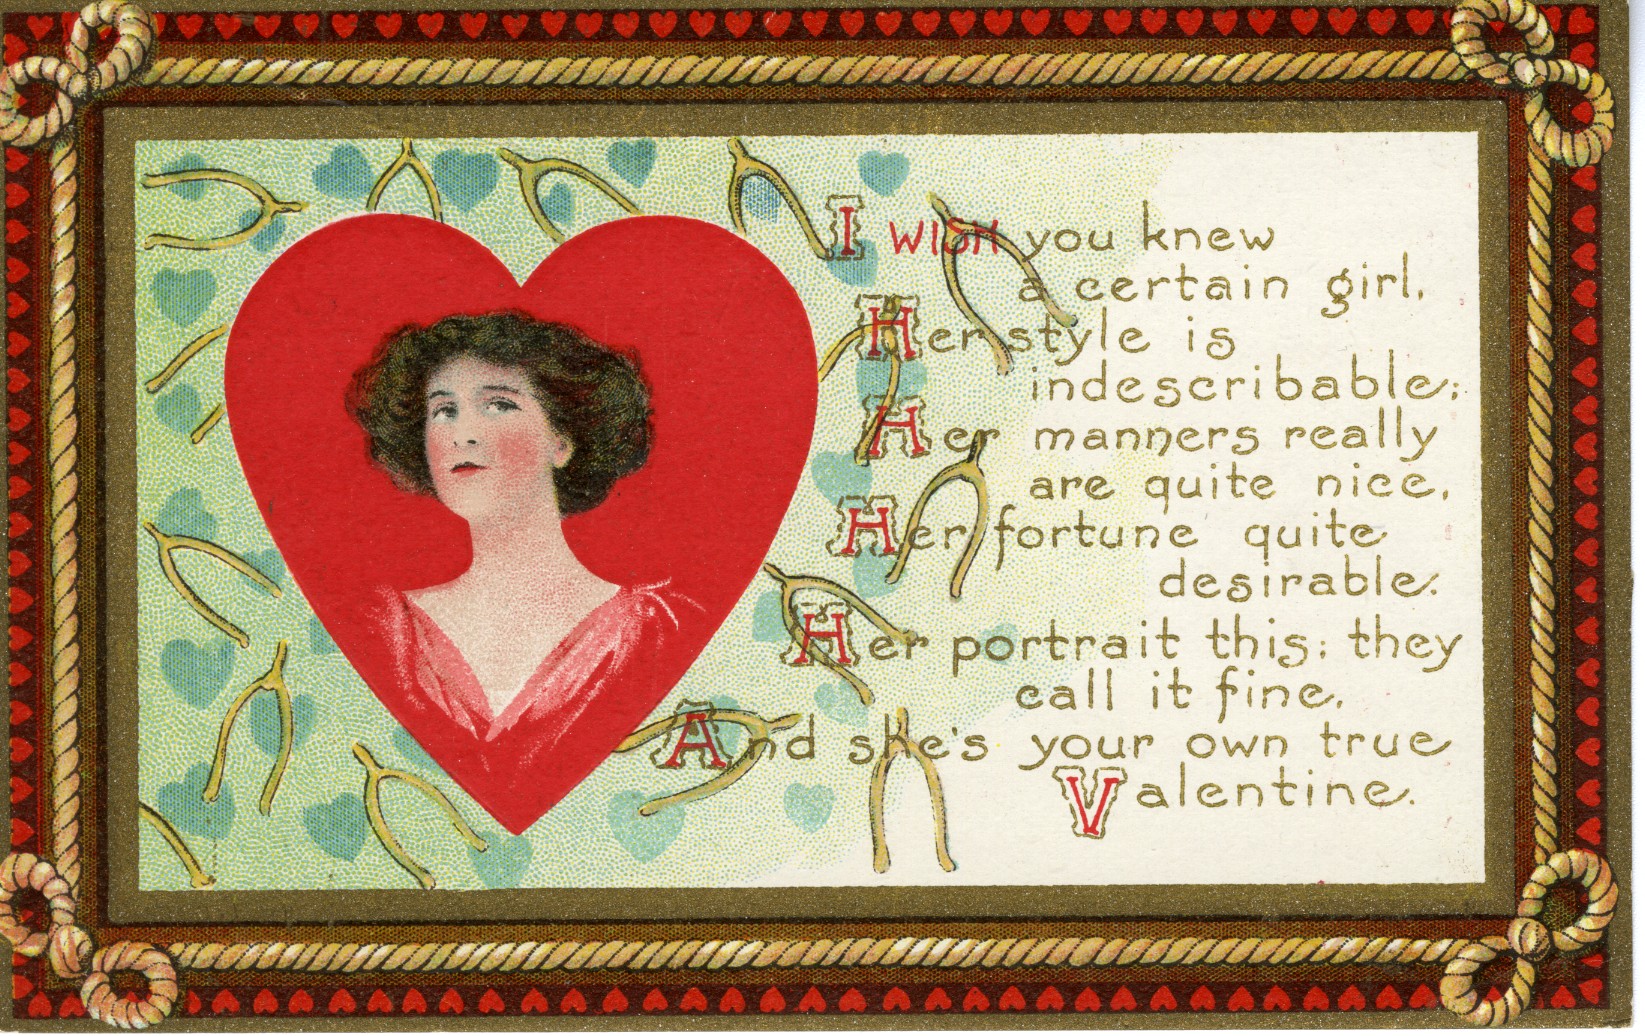 Cartas Poemas Chocolates Y Joyas El Origen De Las Muestras De Amor En San Valentín Infobae